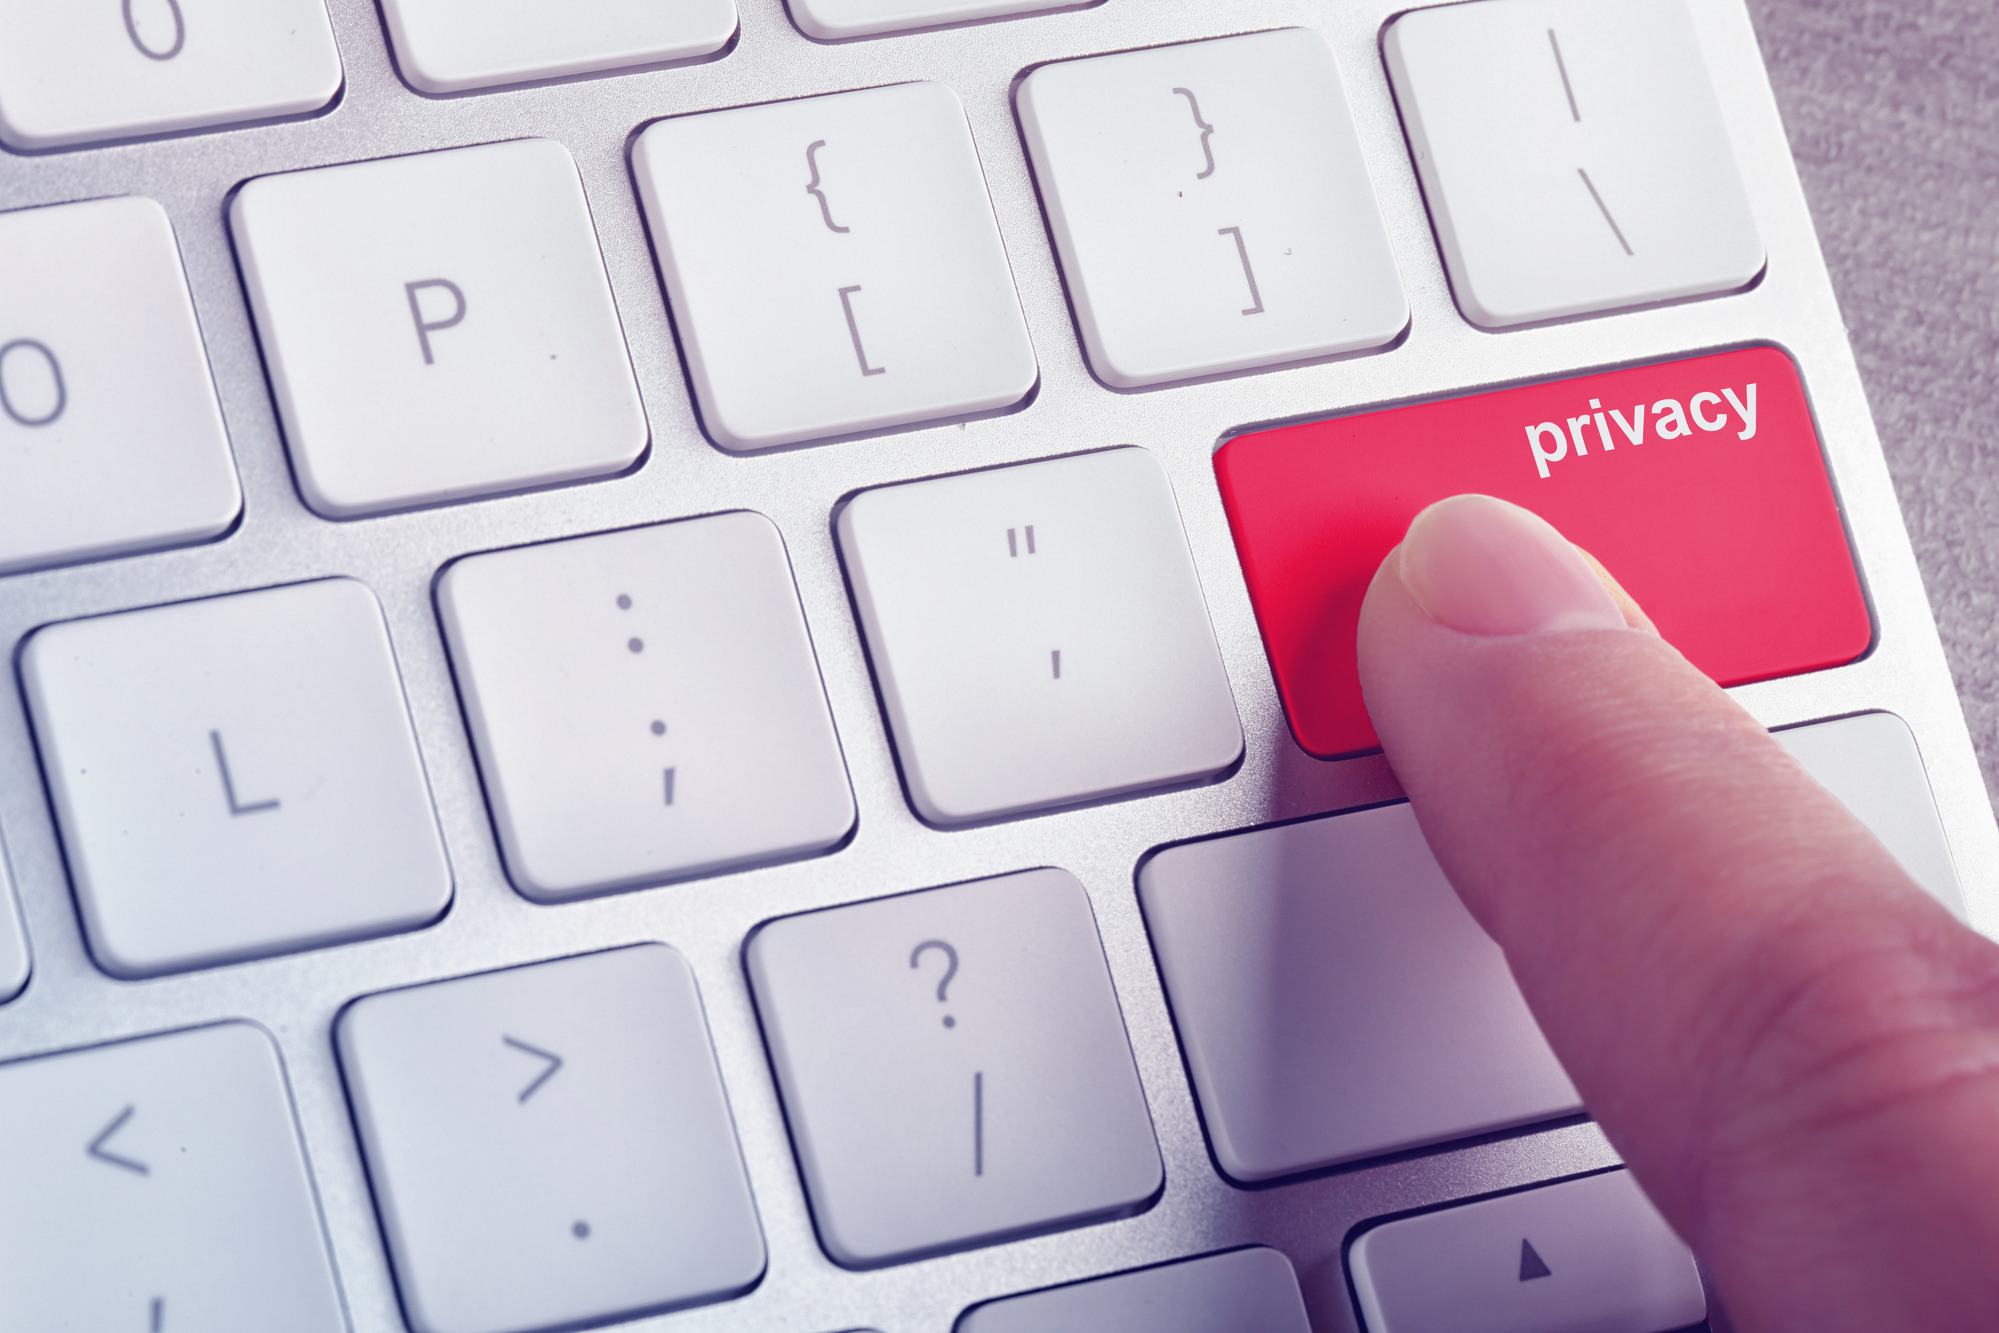 Klawiatura komputera z czerwonym klawiszem z napisem "privacy", którego dotyka palec osoby.